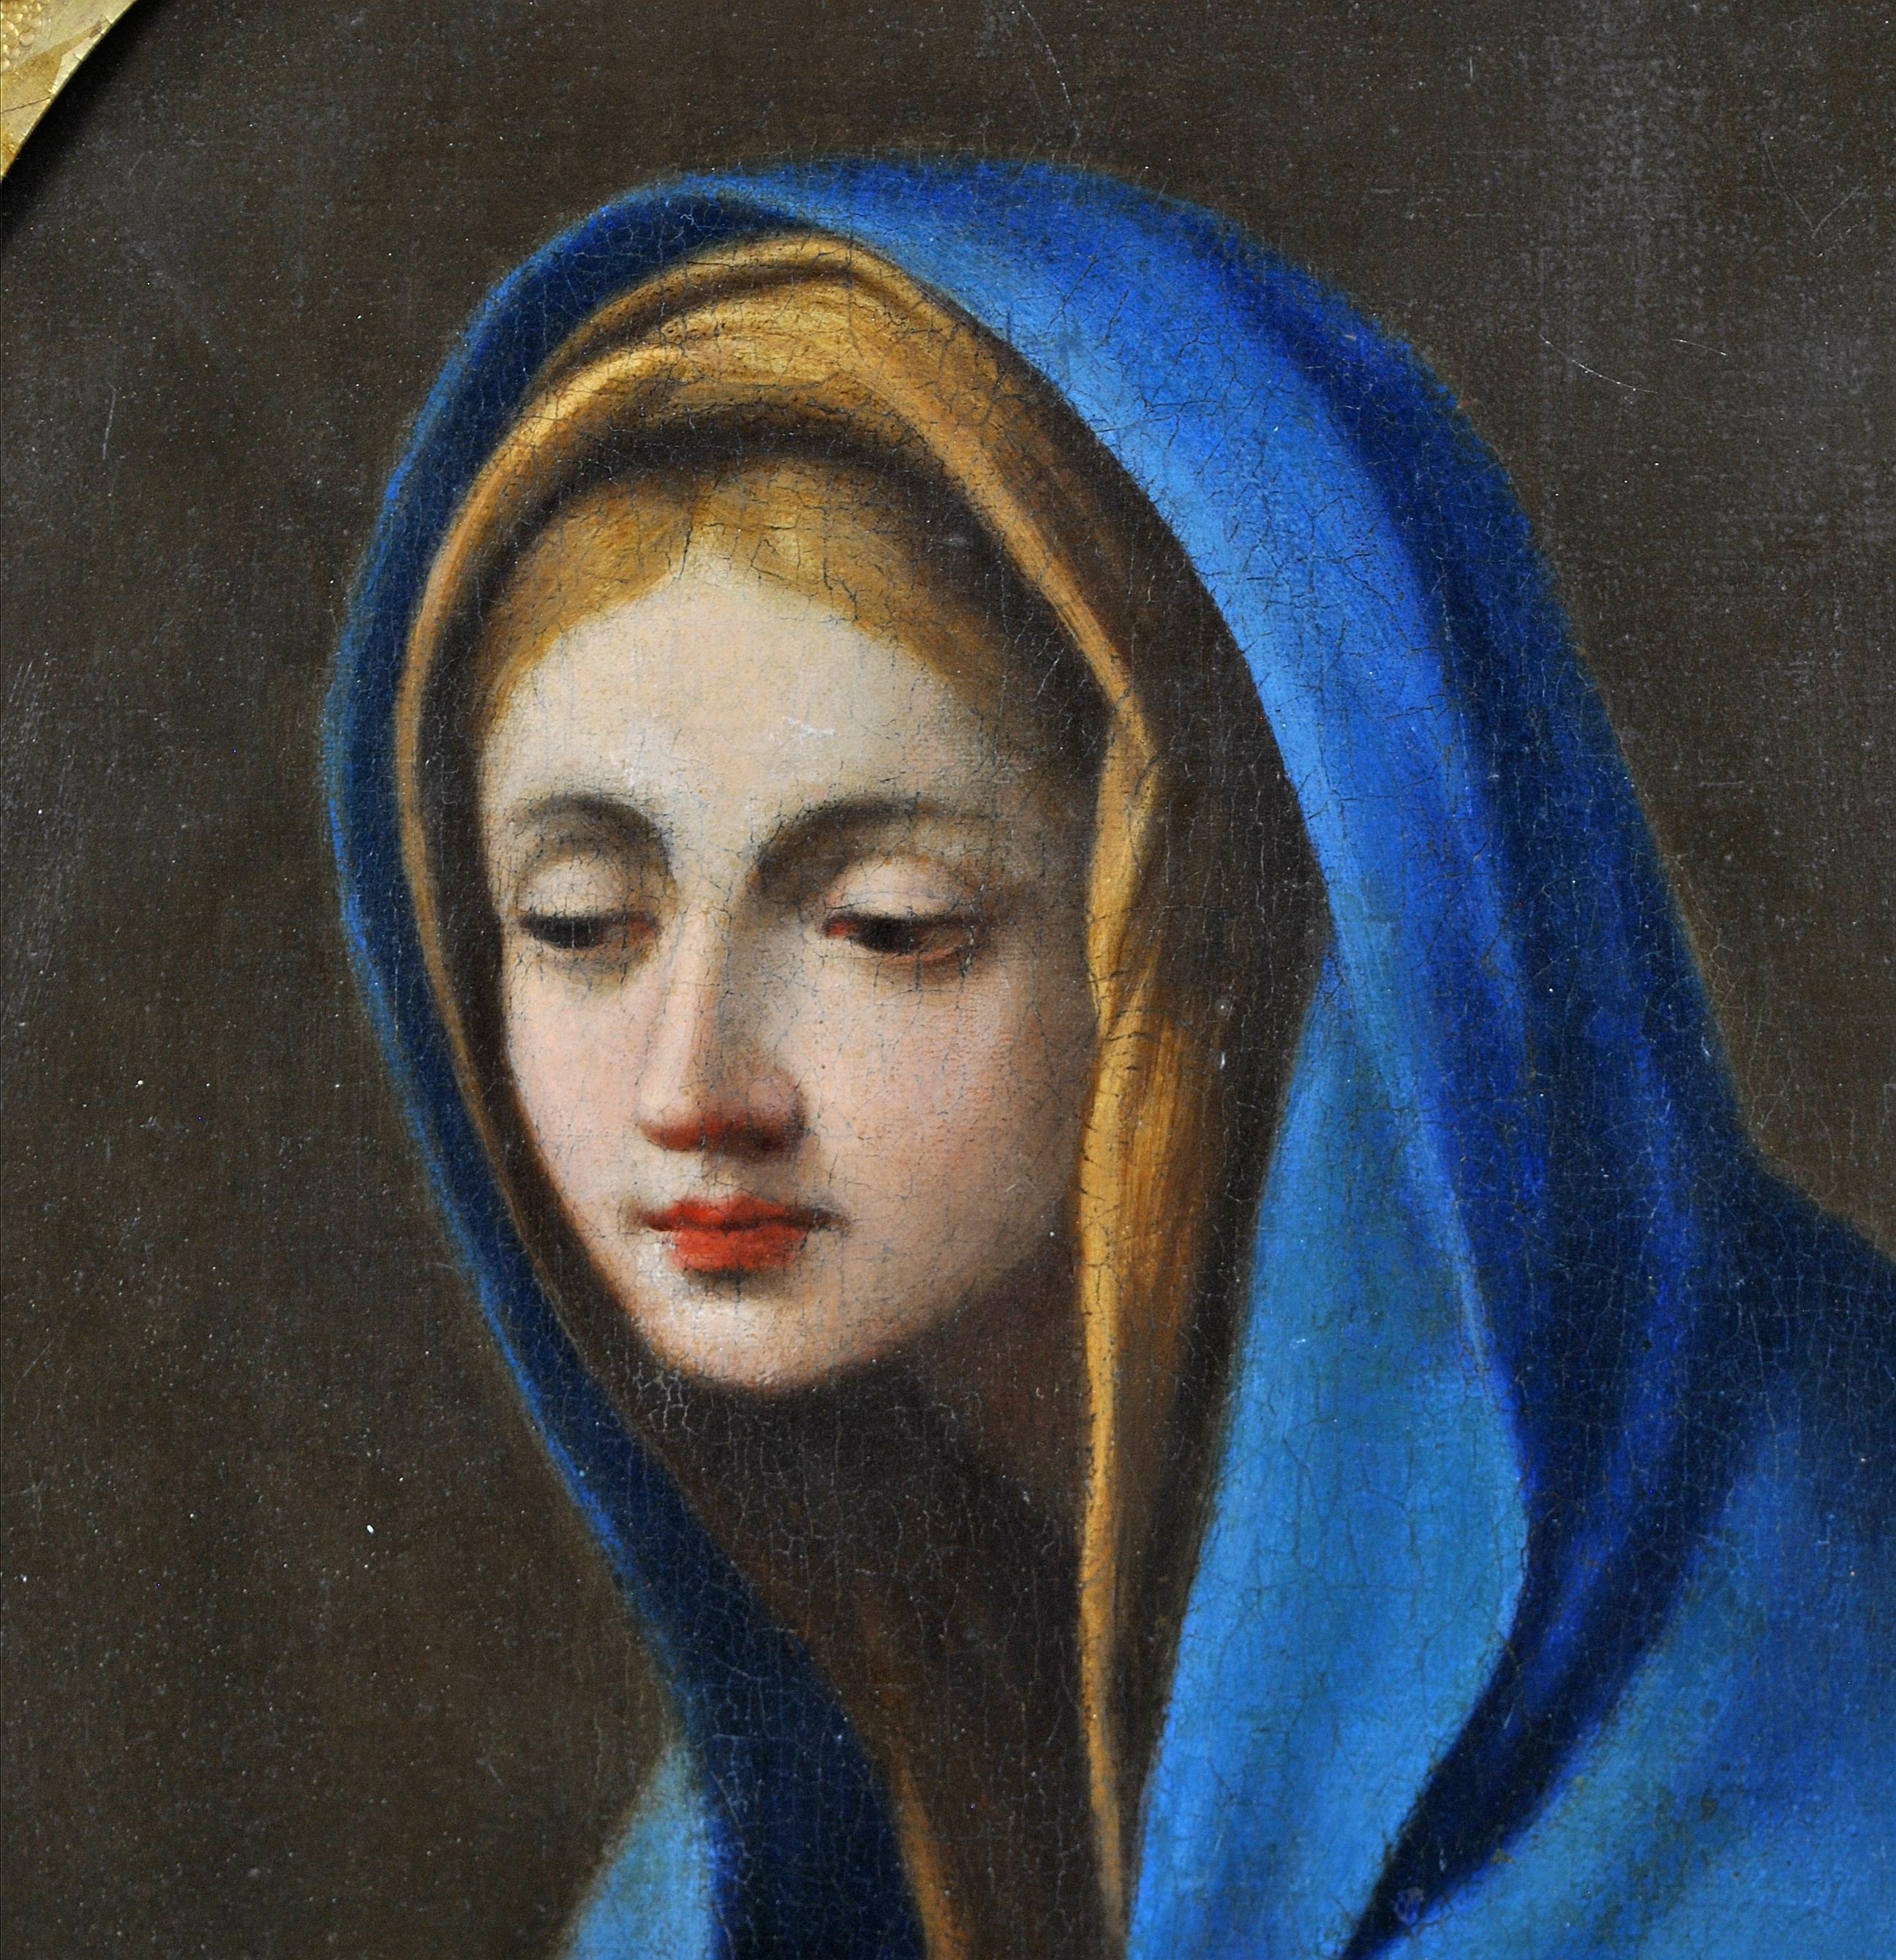 Ein schönes italienisches Öl auf Leinwand aus dem späten 17. Jahrhundert, das die Jungfrau in Anbetung darstellt, aus dem Umkreis von Carlo Maratta. 

Ein frühes italienisches Werk von hervorragender Qualität, präsentiert in einem antiken